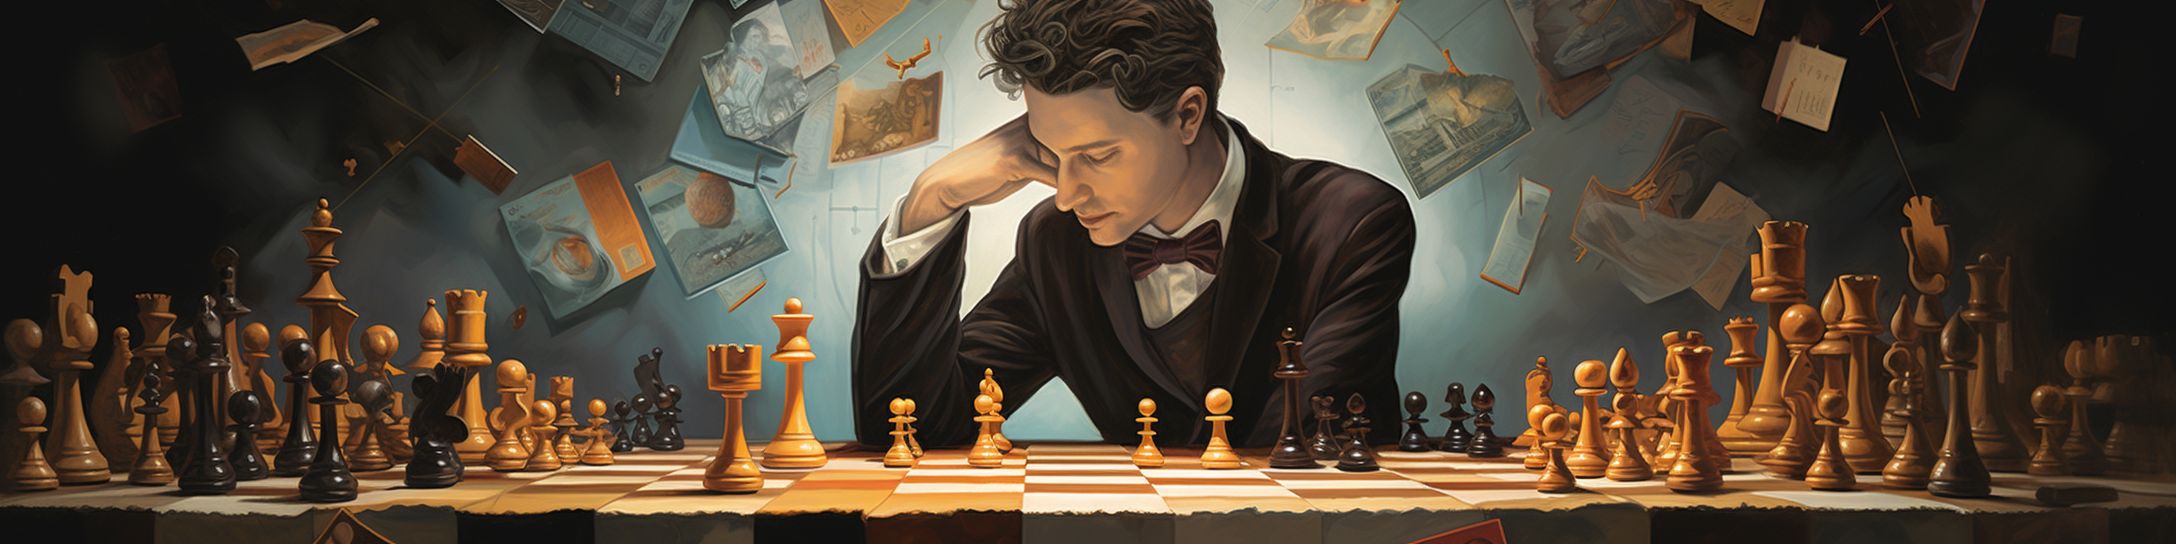  Le rôle de la psychologie dans les compétitions d'échecs.